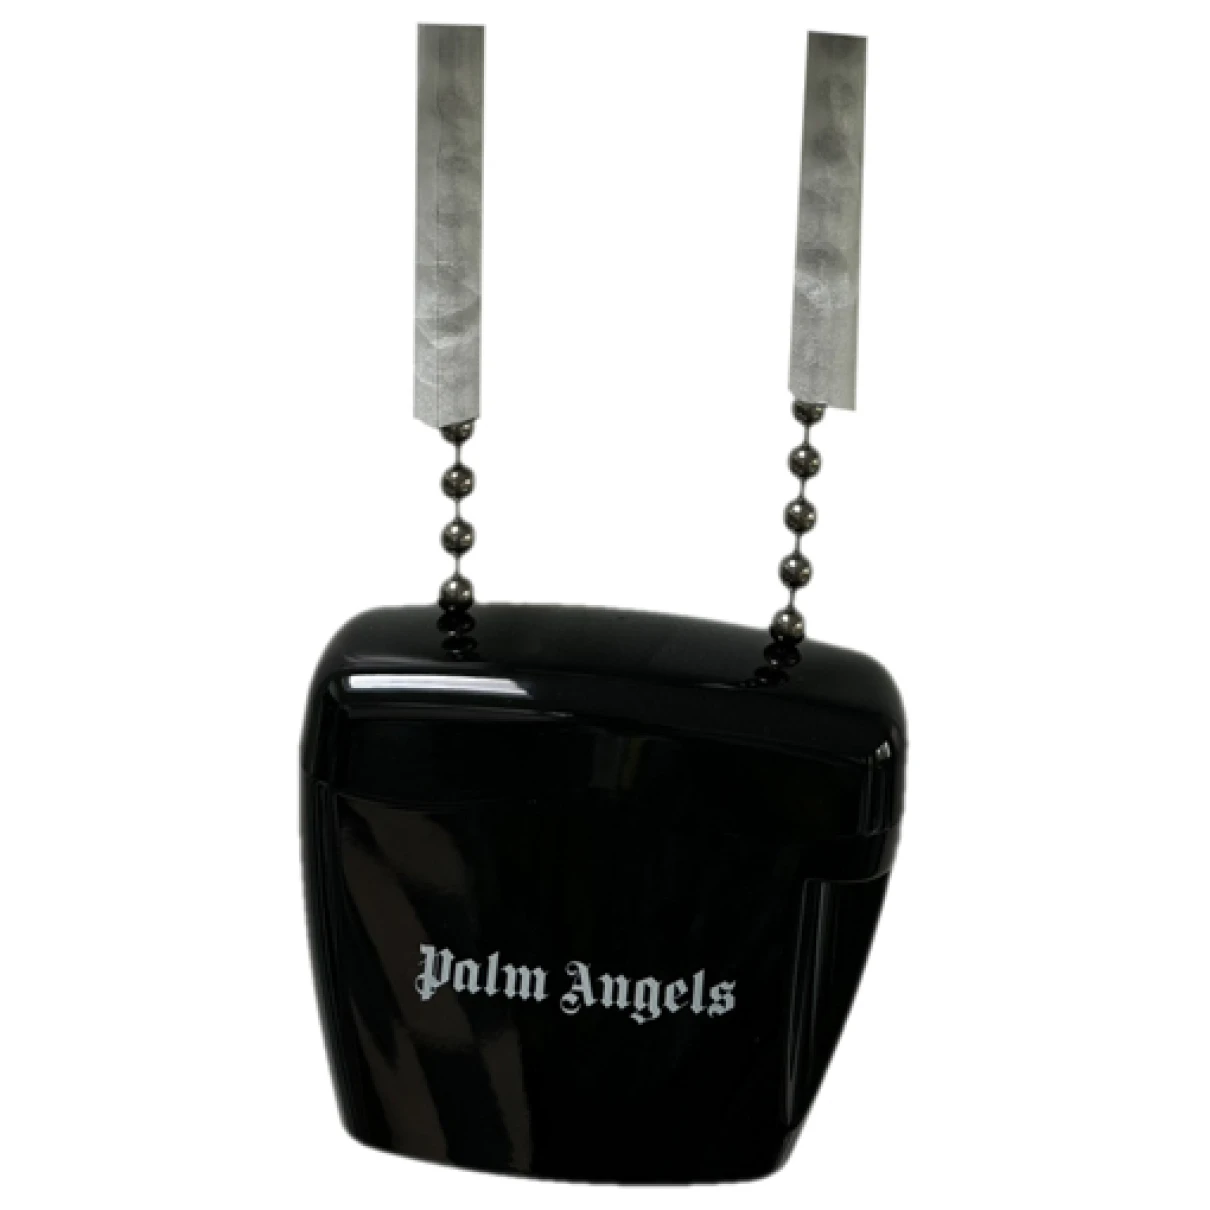 Pre-owned Palm Angels Handbag In Black